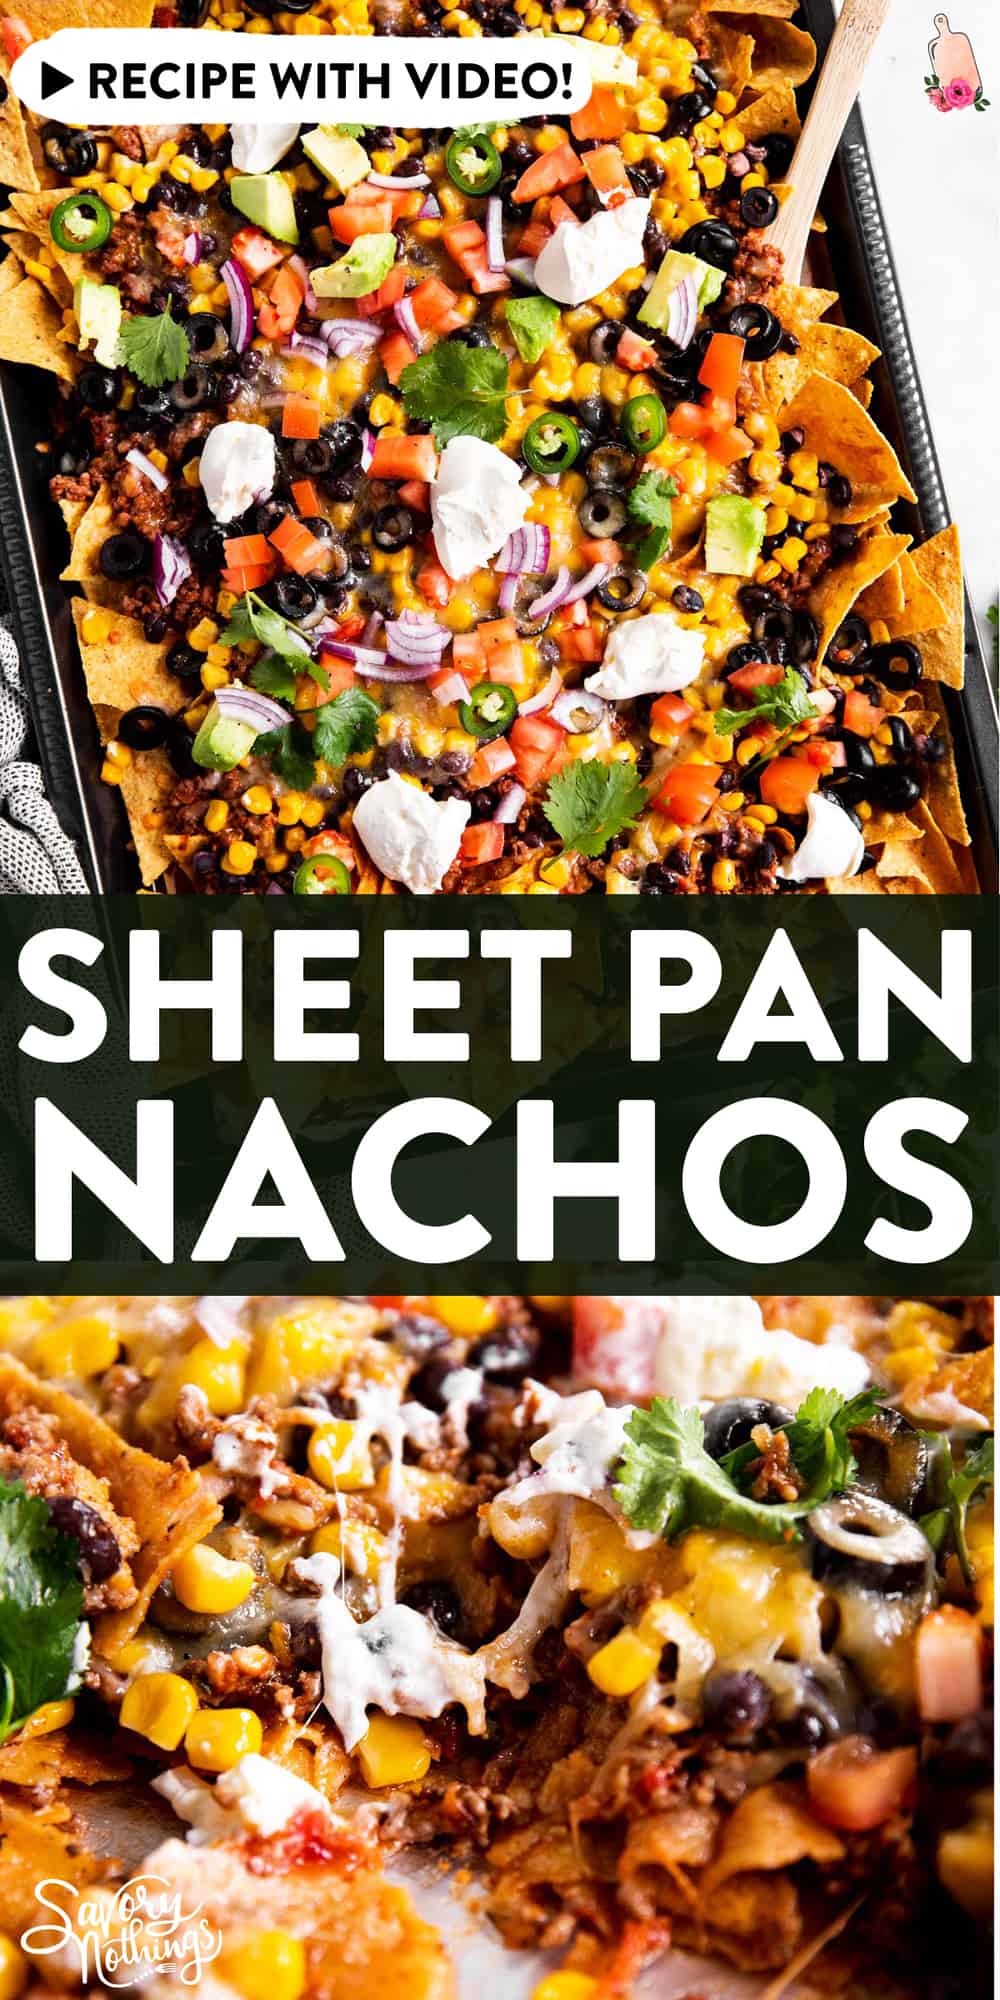 Loaded Sheet Pan Nachos Recipe | Savory Nothings